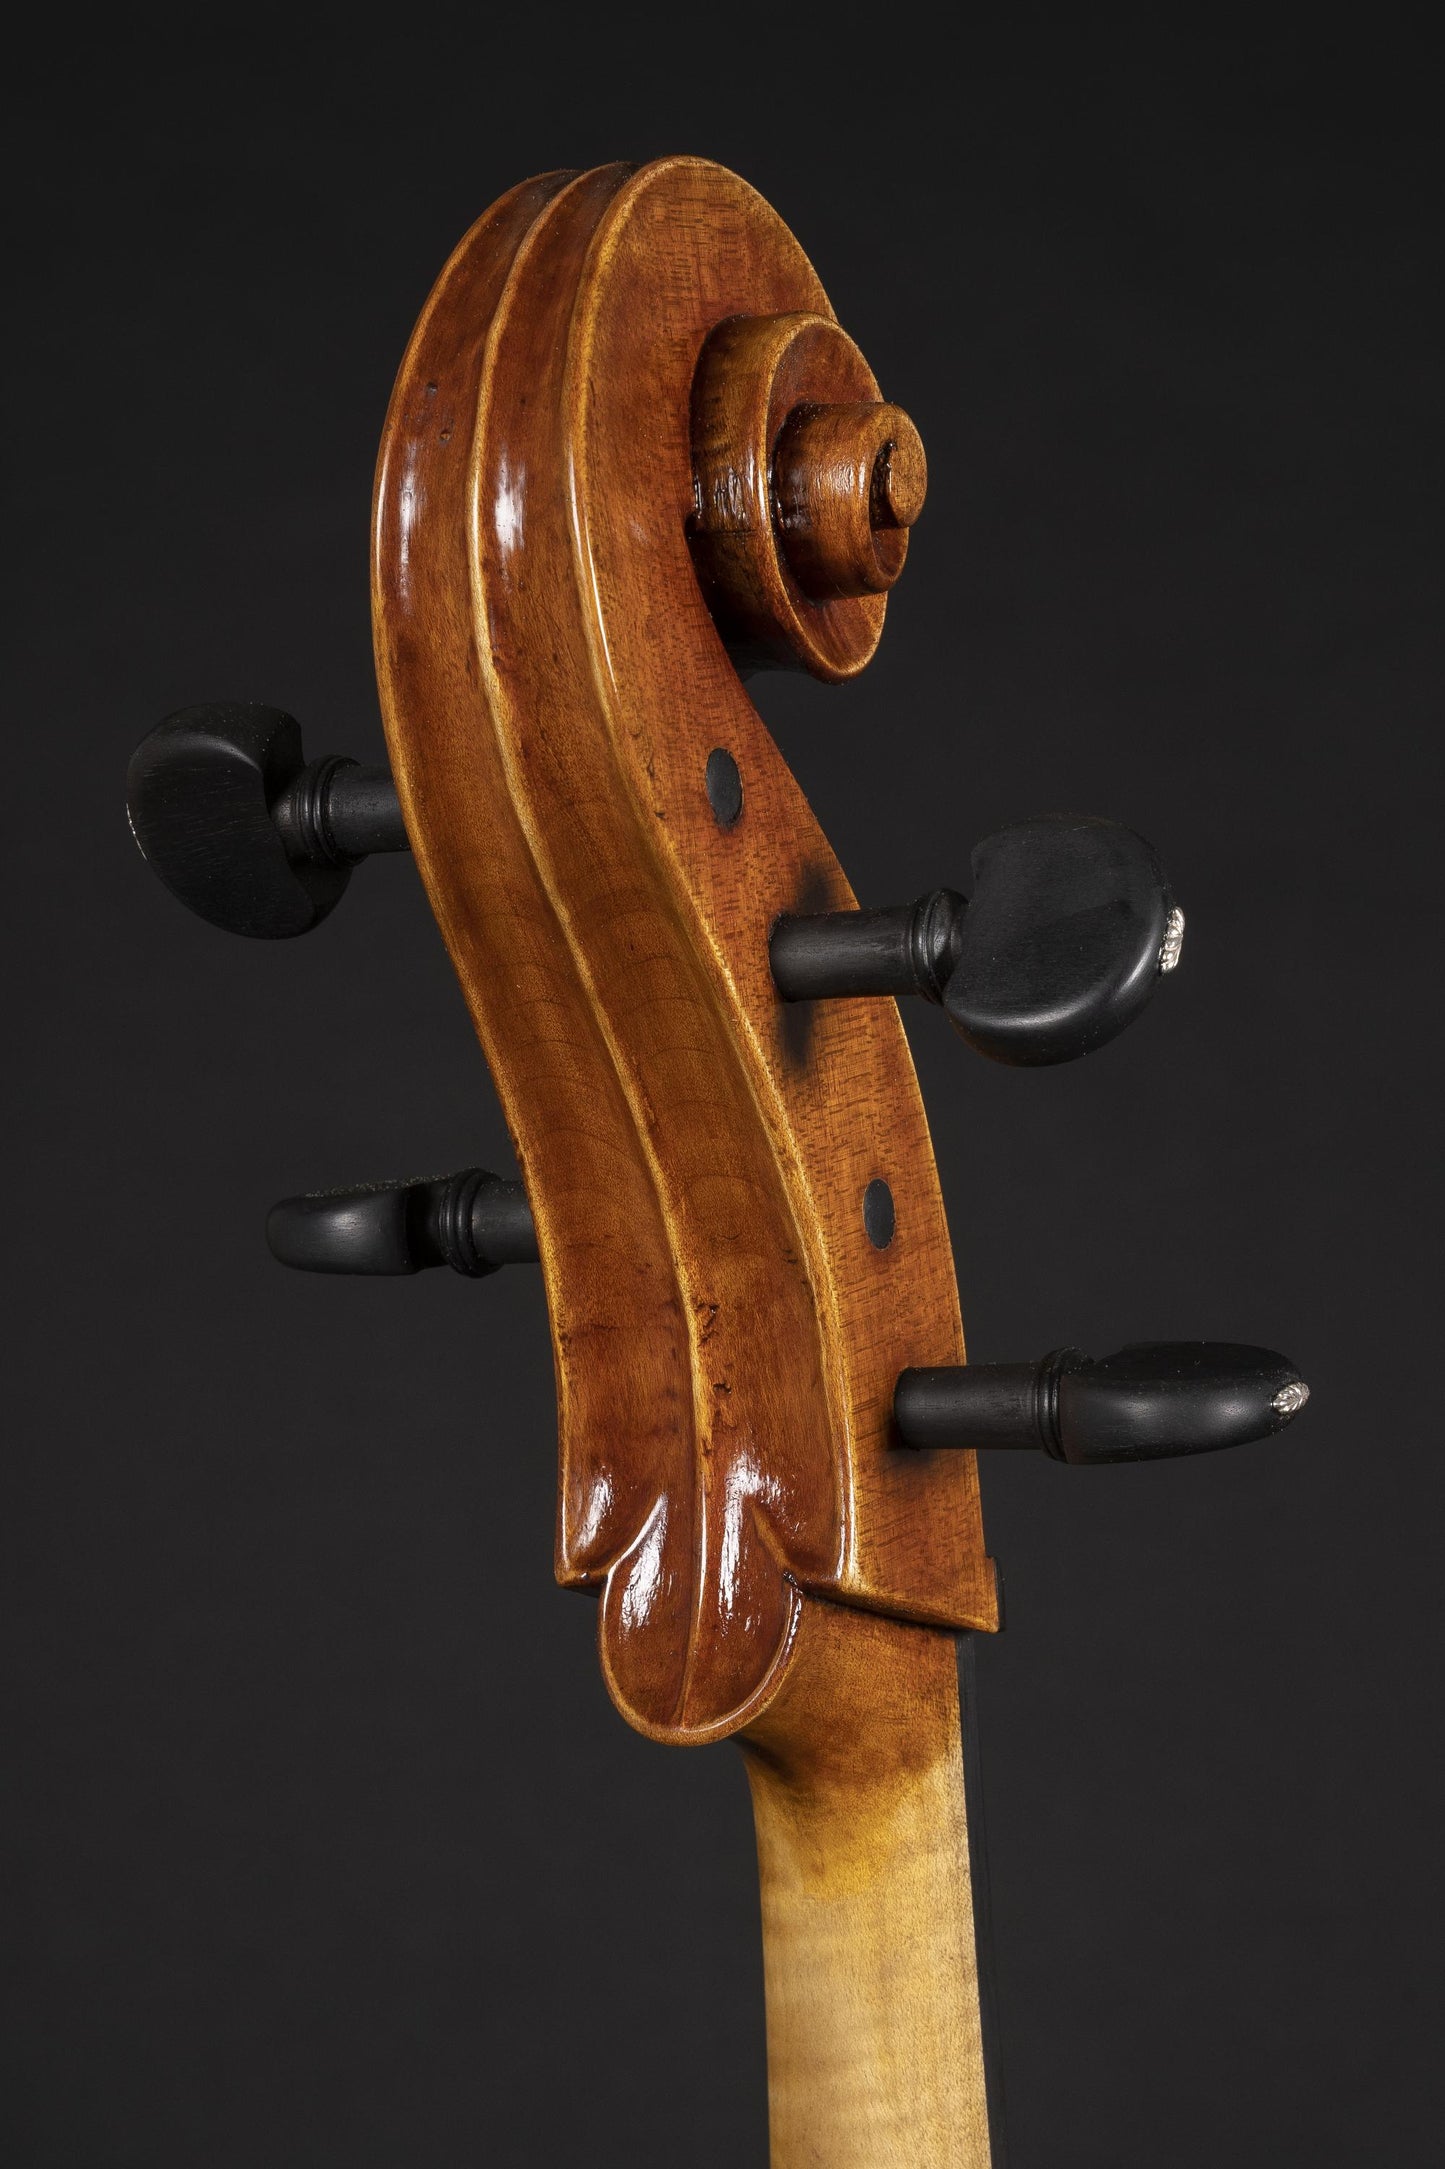 Vettori Paolo Cello Mod. Guadagnini "Masolino" 2021